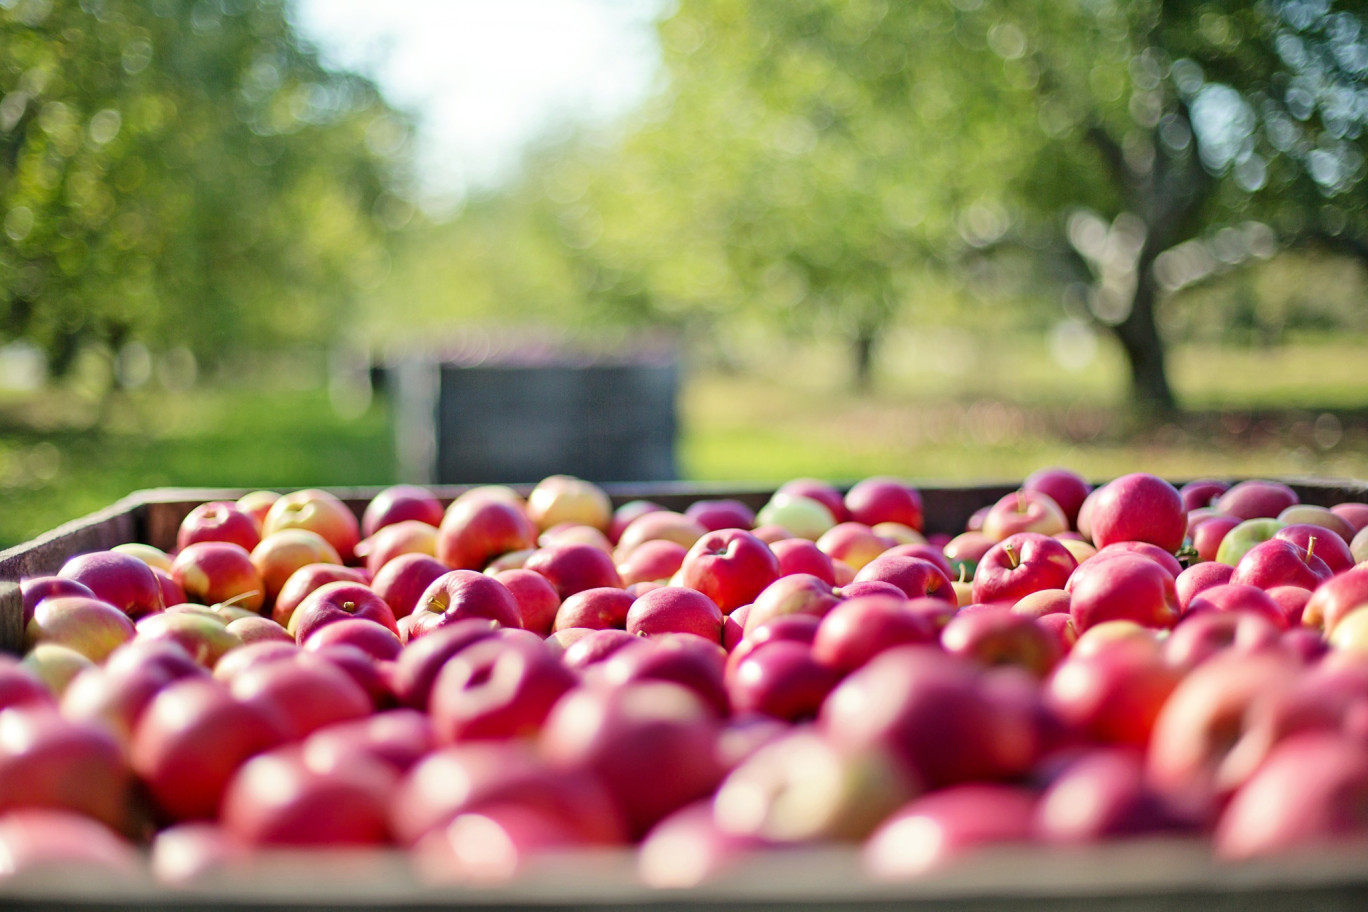 Les récoltes de fruits ont connu une baisse des quantités mais la sécheresse a renforcé les saveurs gustatives. (@Pixabay)